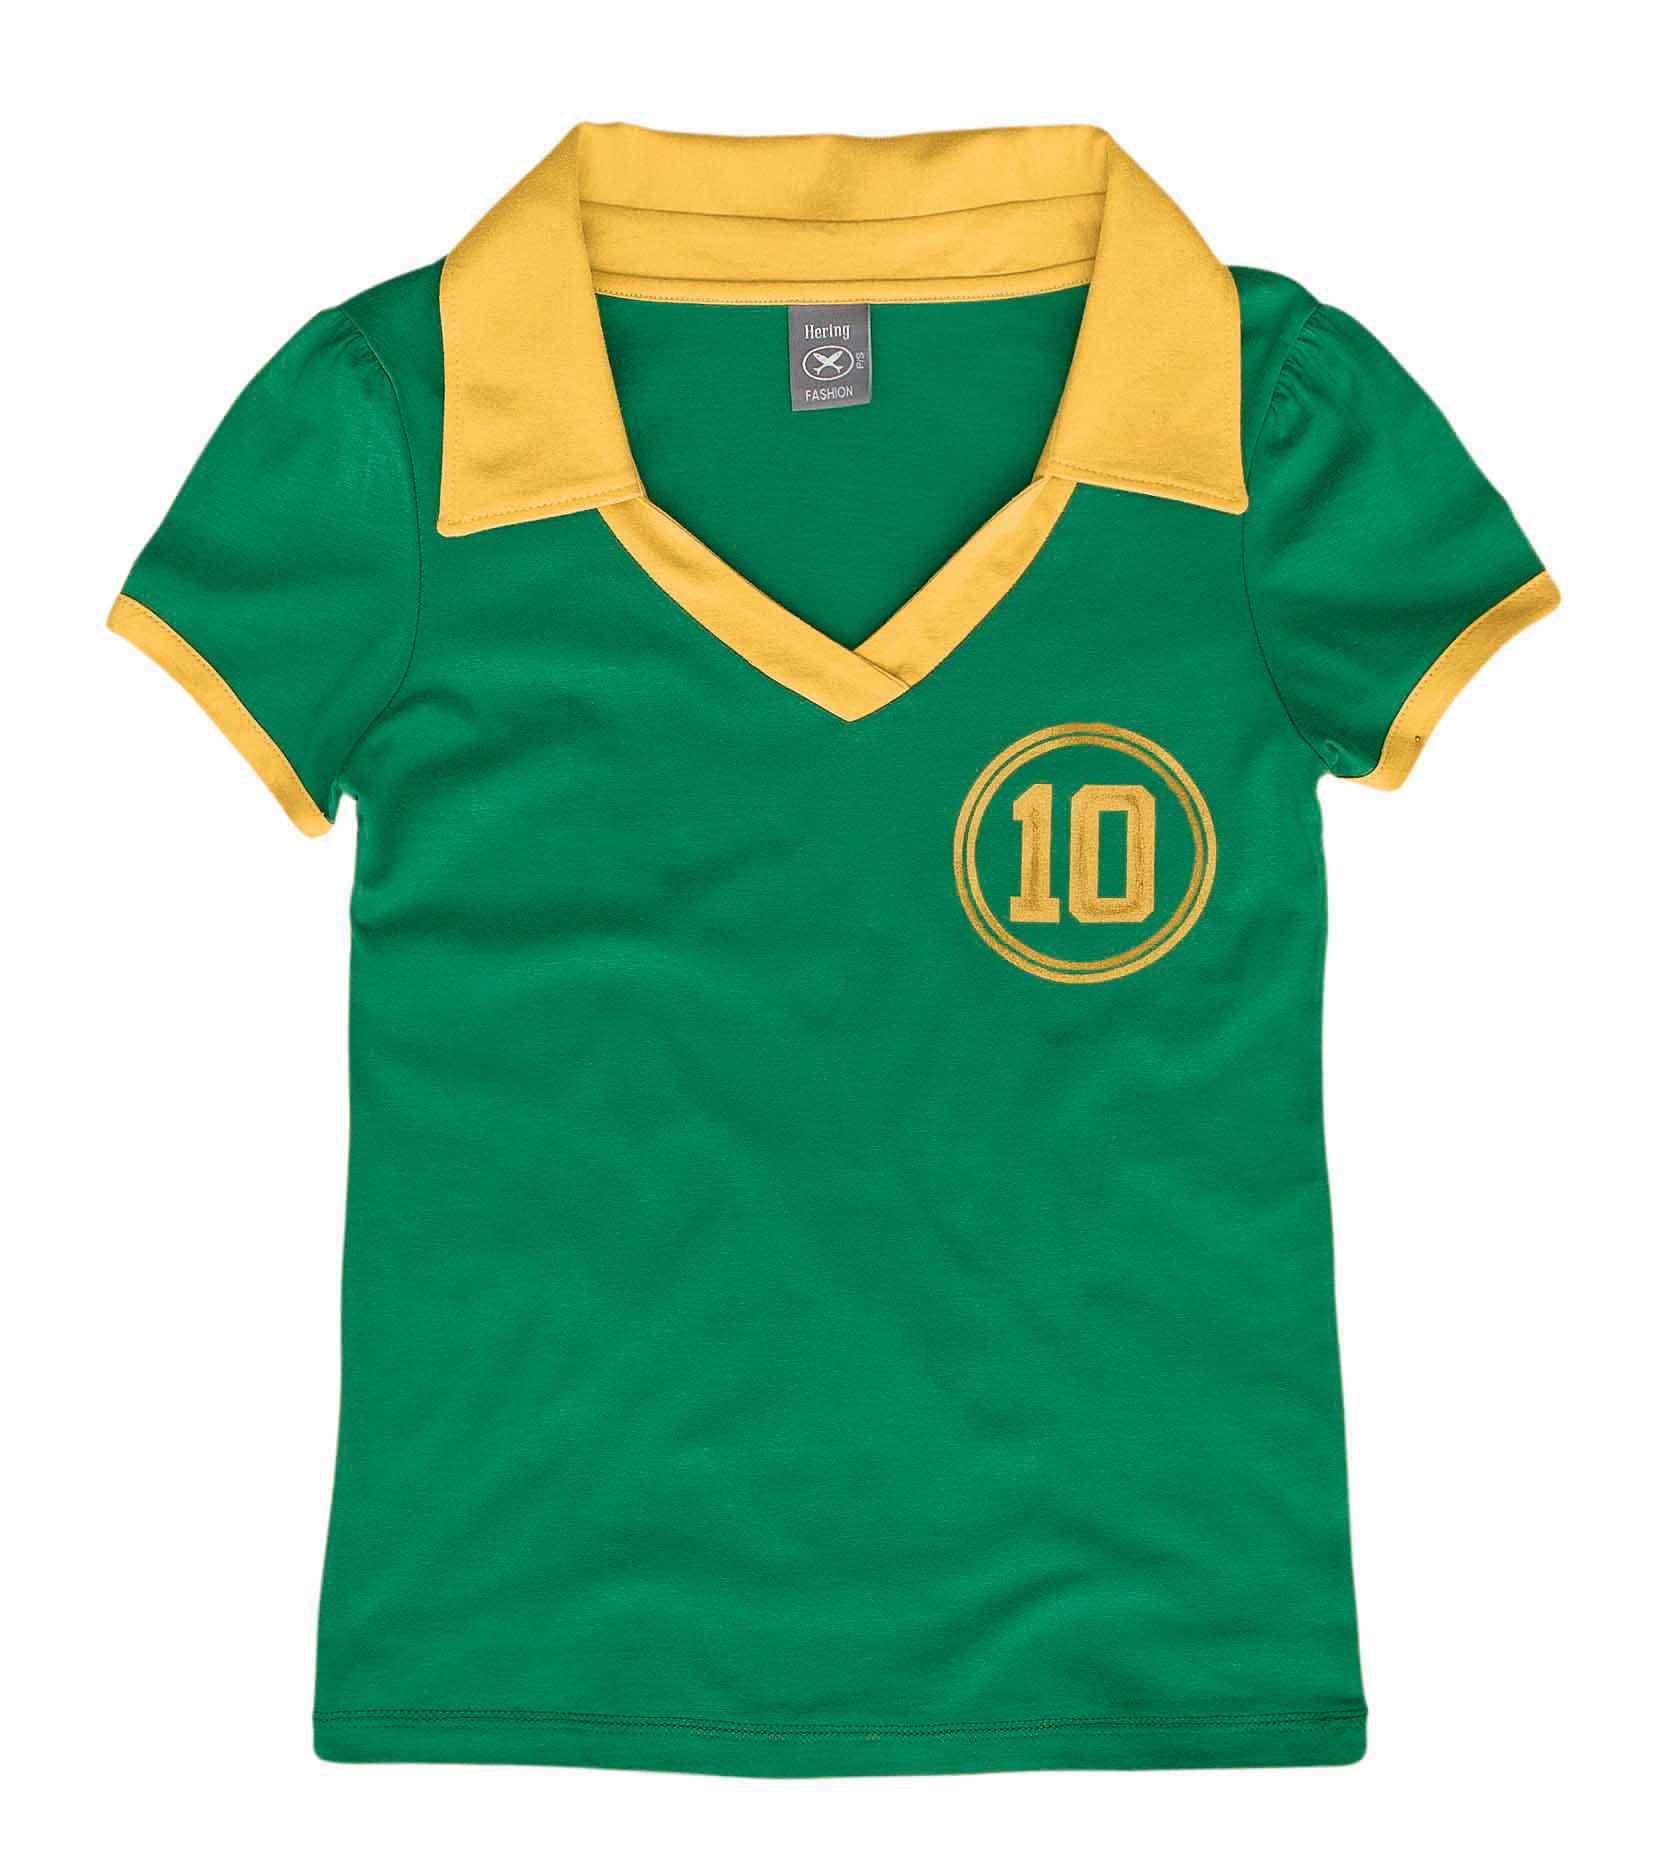 Camiseta polo nas cores verde e amarelo, representando o Brasil.